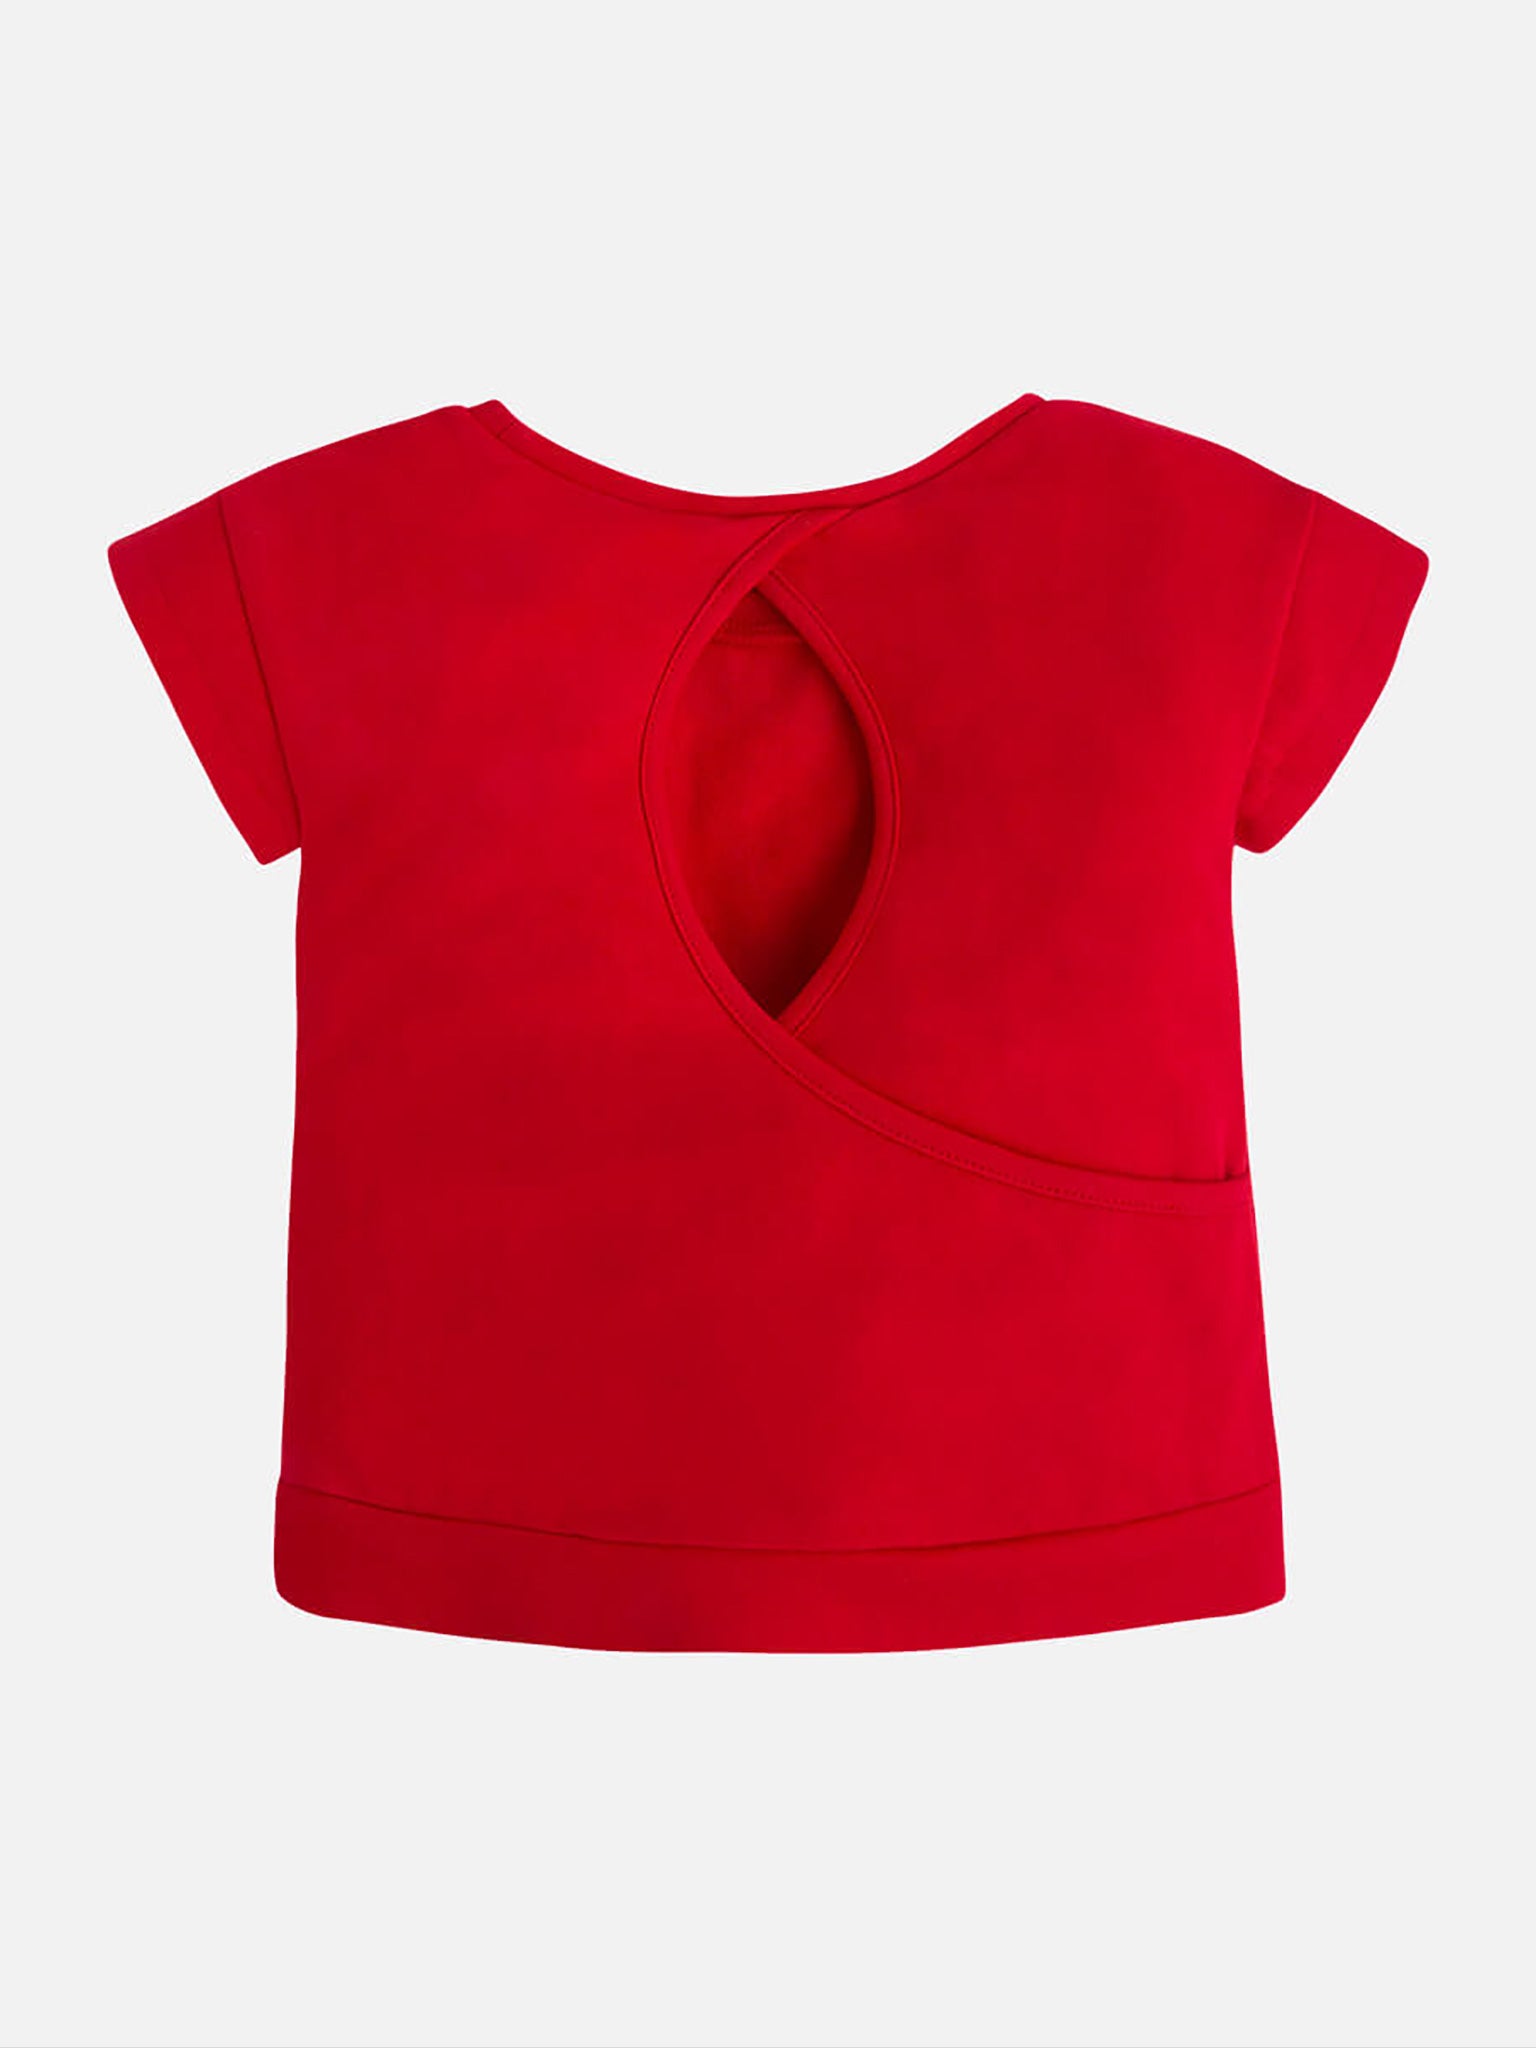 Παιδική μπλούζα με τυπώματα | 3077-039